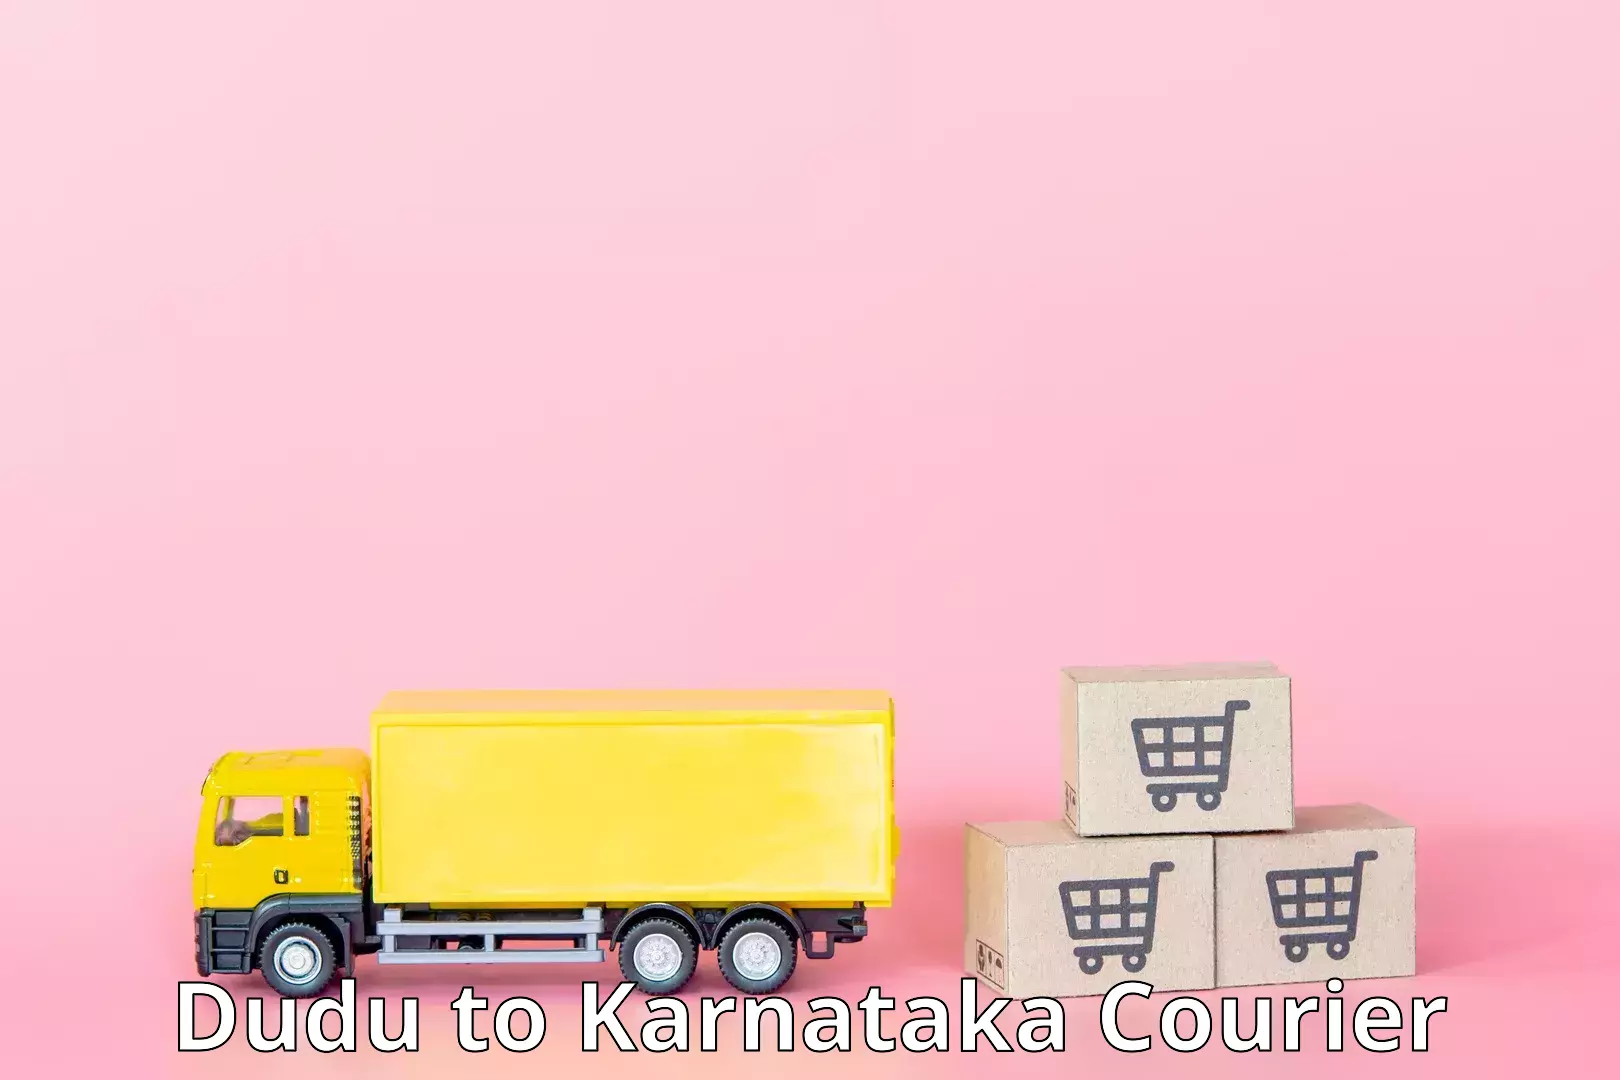 24/7 courier service in Dudu to Kotturu